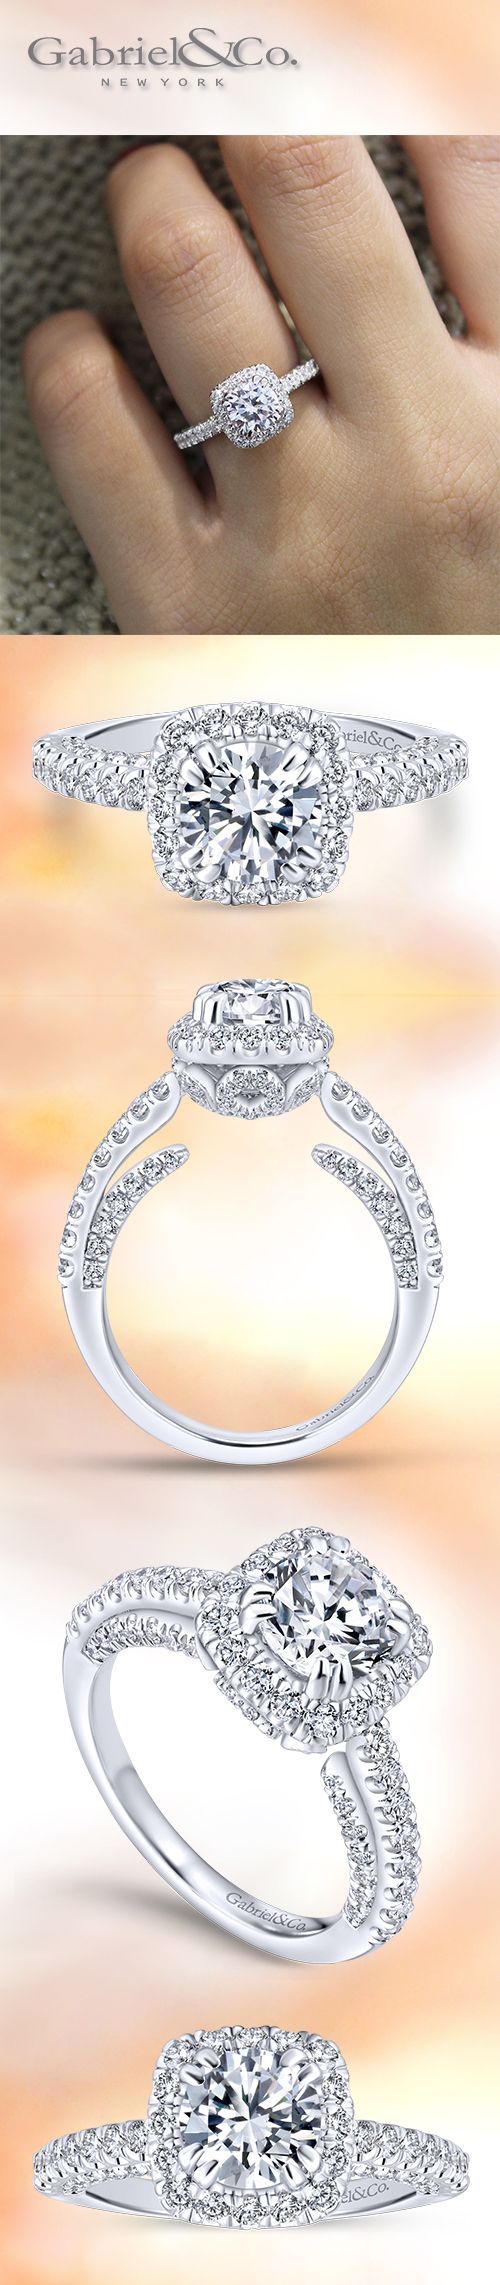 Gabriel & Co. – Voted #1 Preferred Jewelry Designer. The Classic 14k White Gold Ro